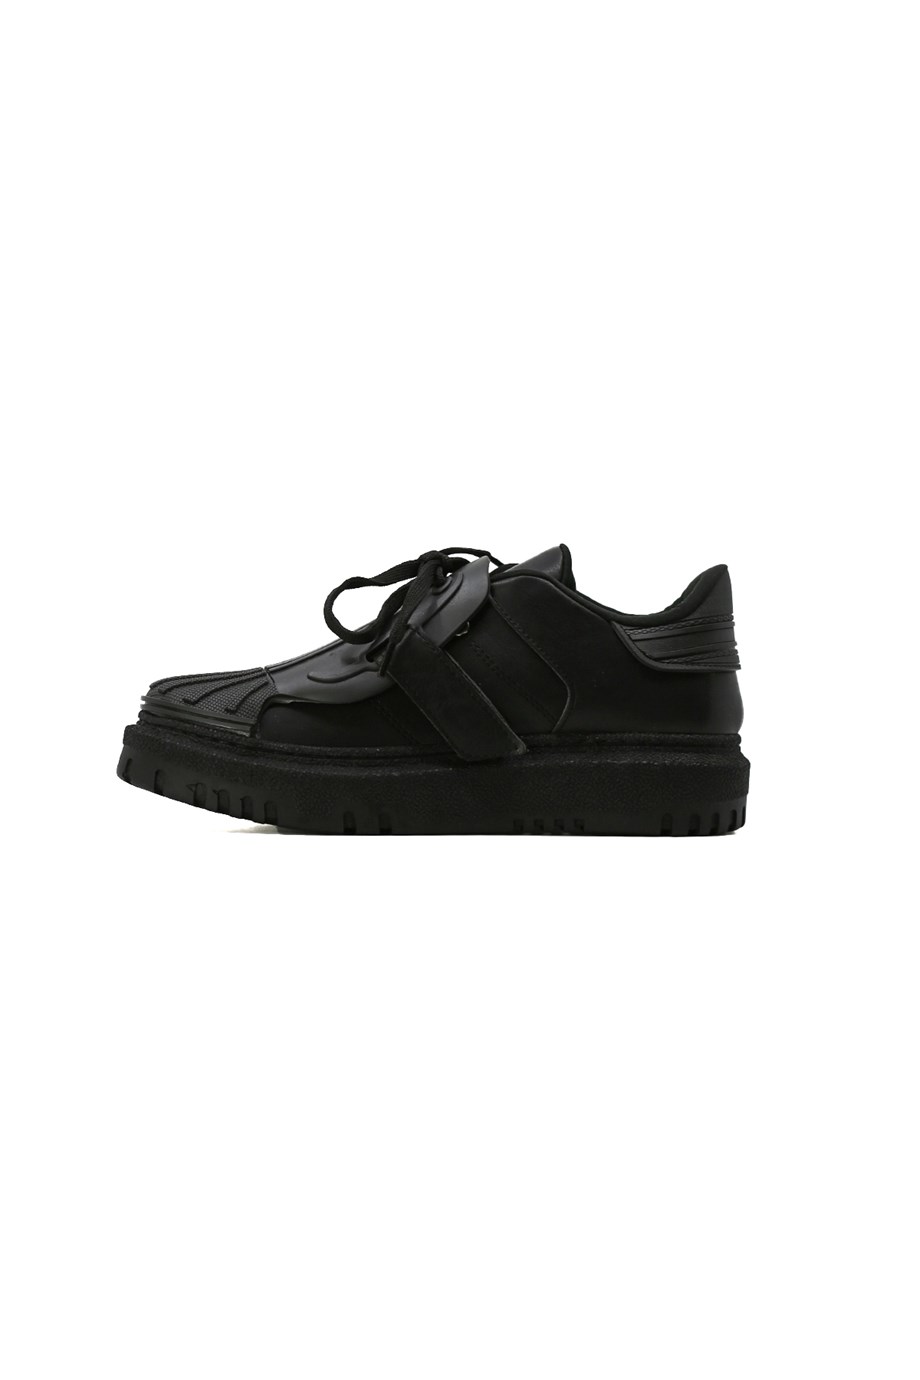 Ti̇lya Yeni̇ Sezon Zara Model Sneakers Spor Ayakkabi Siyah - Still Durağı